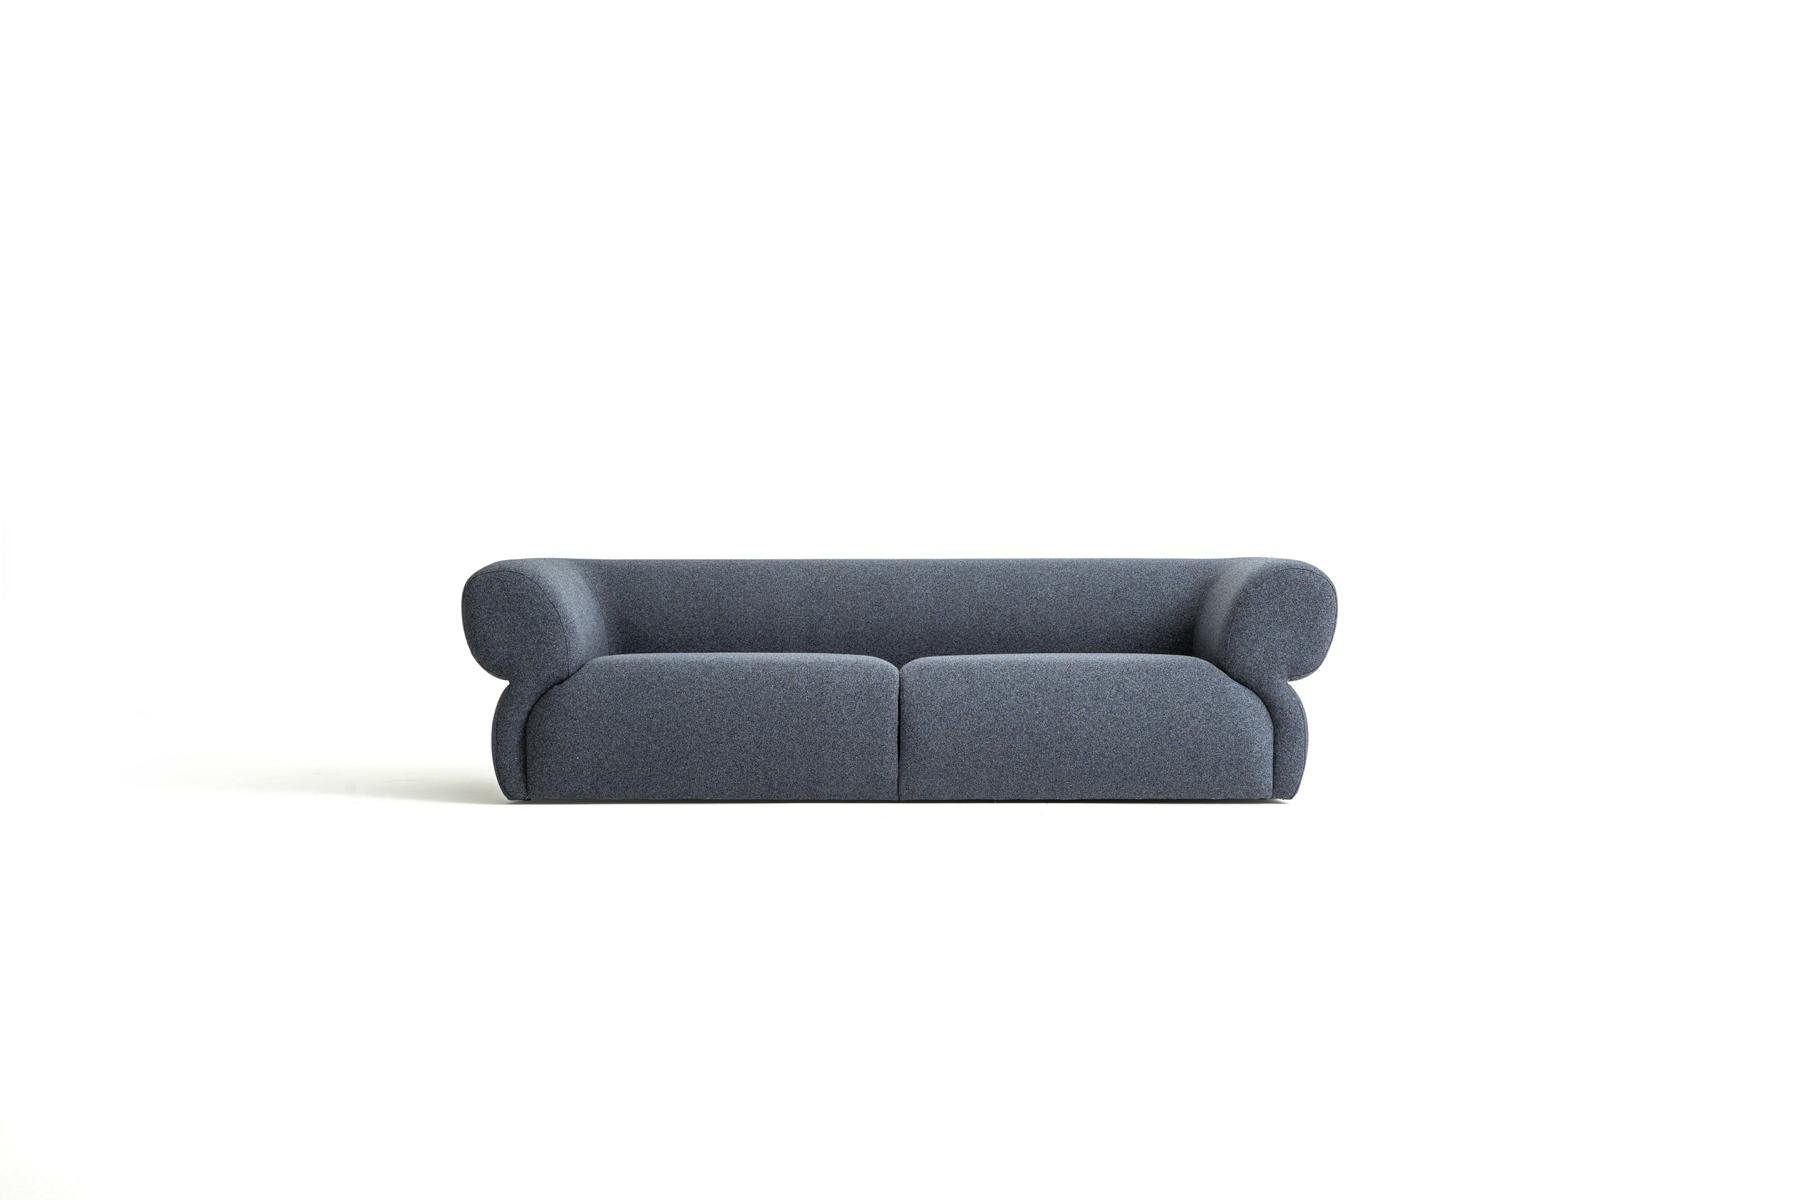 JVmoebel 3-Sitzer Luxus Sofa 3 Sitzer Möbel Wohnzimmer 250cm Design Polstersofa Neu, Made in Europe Blau